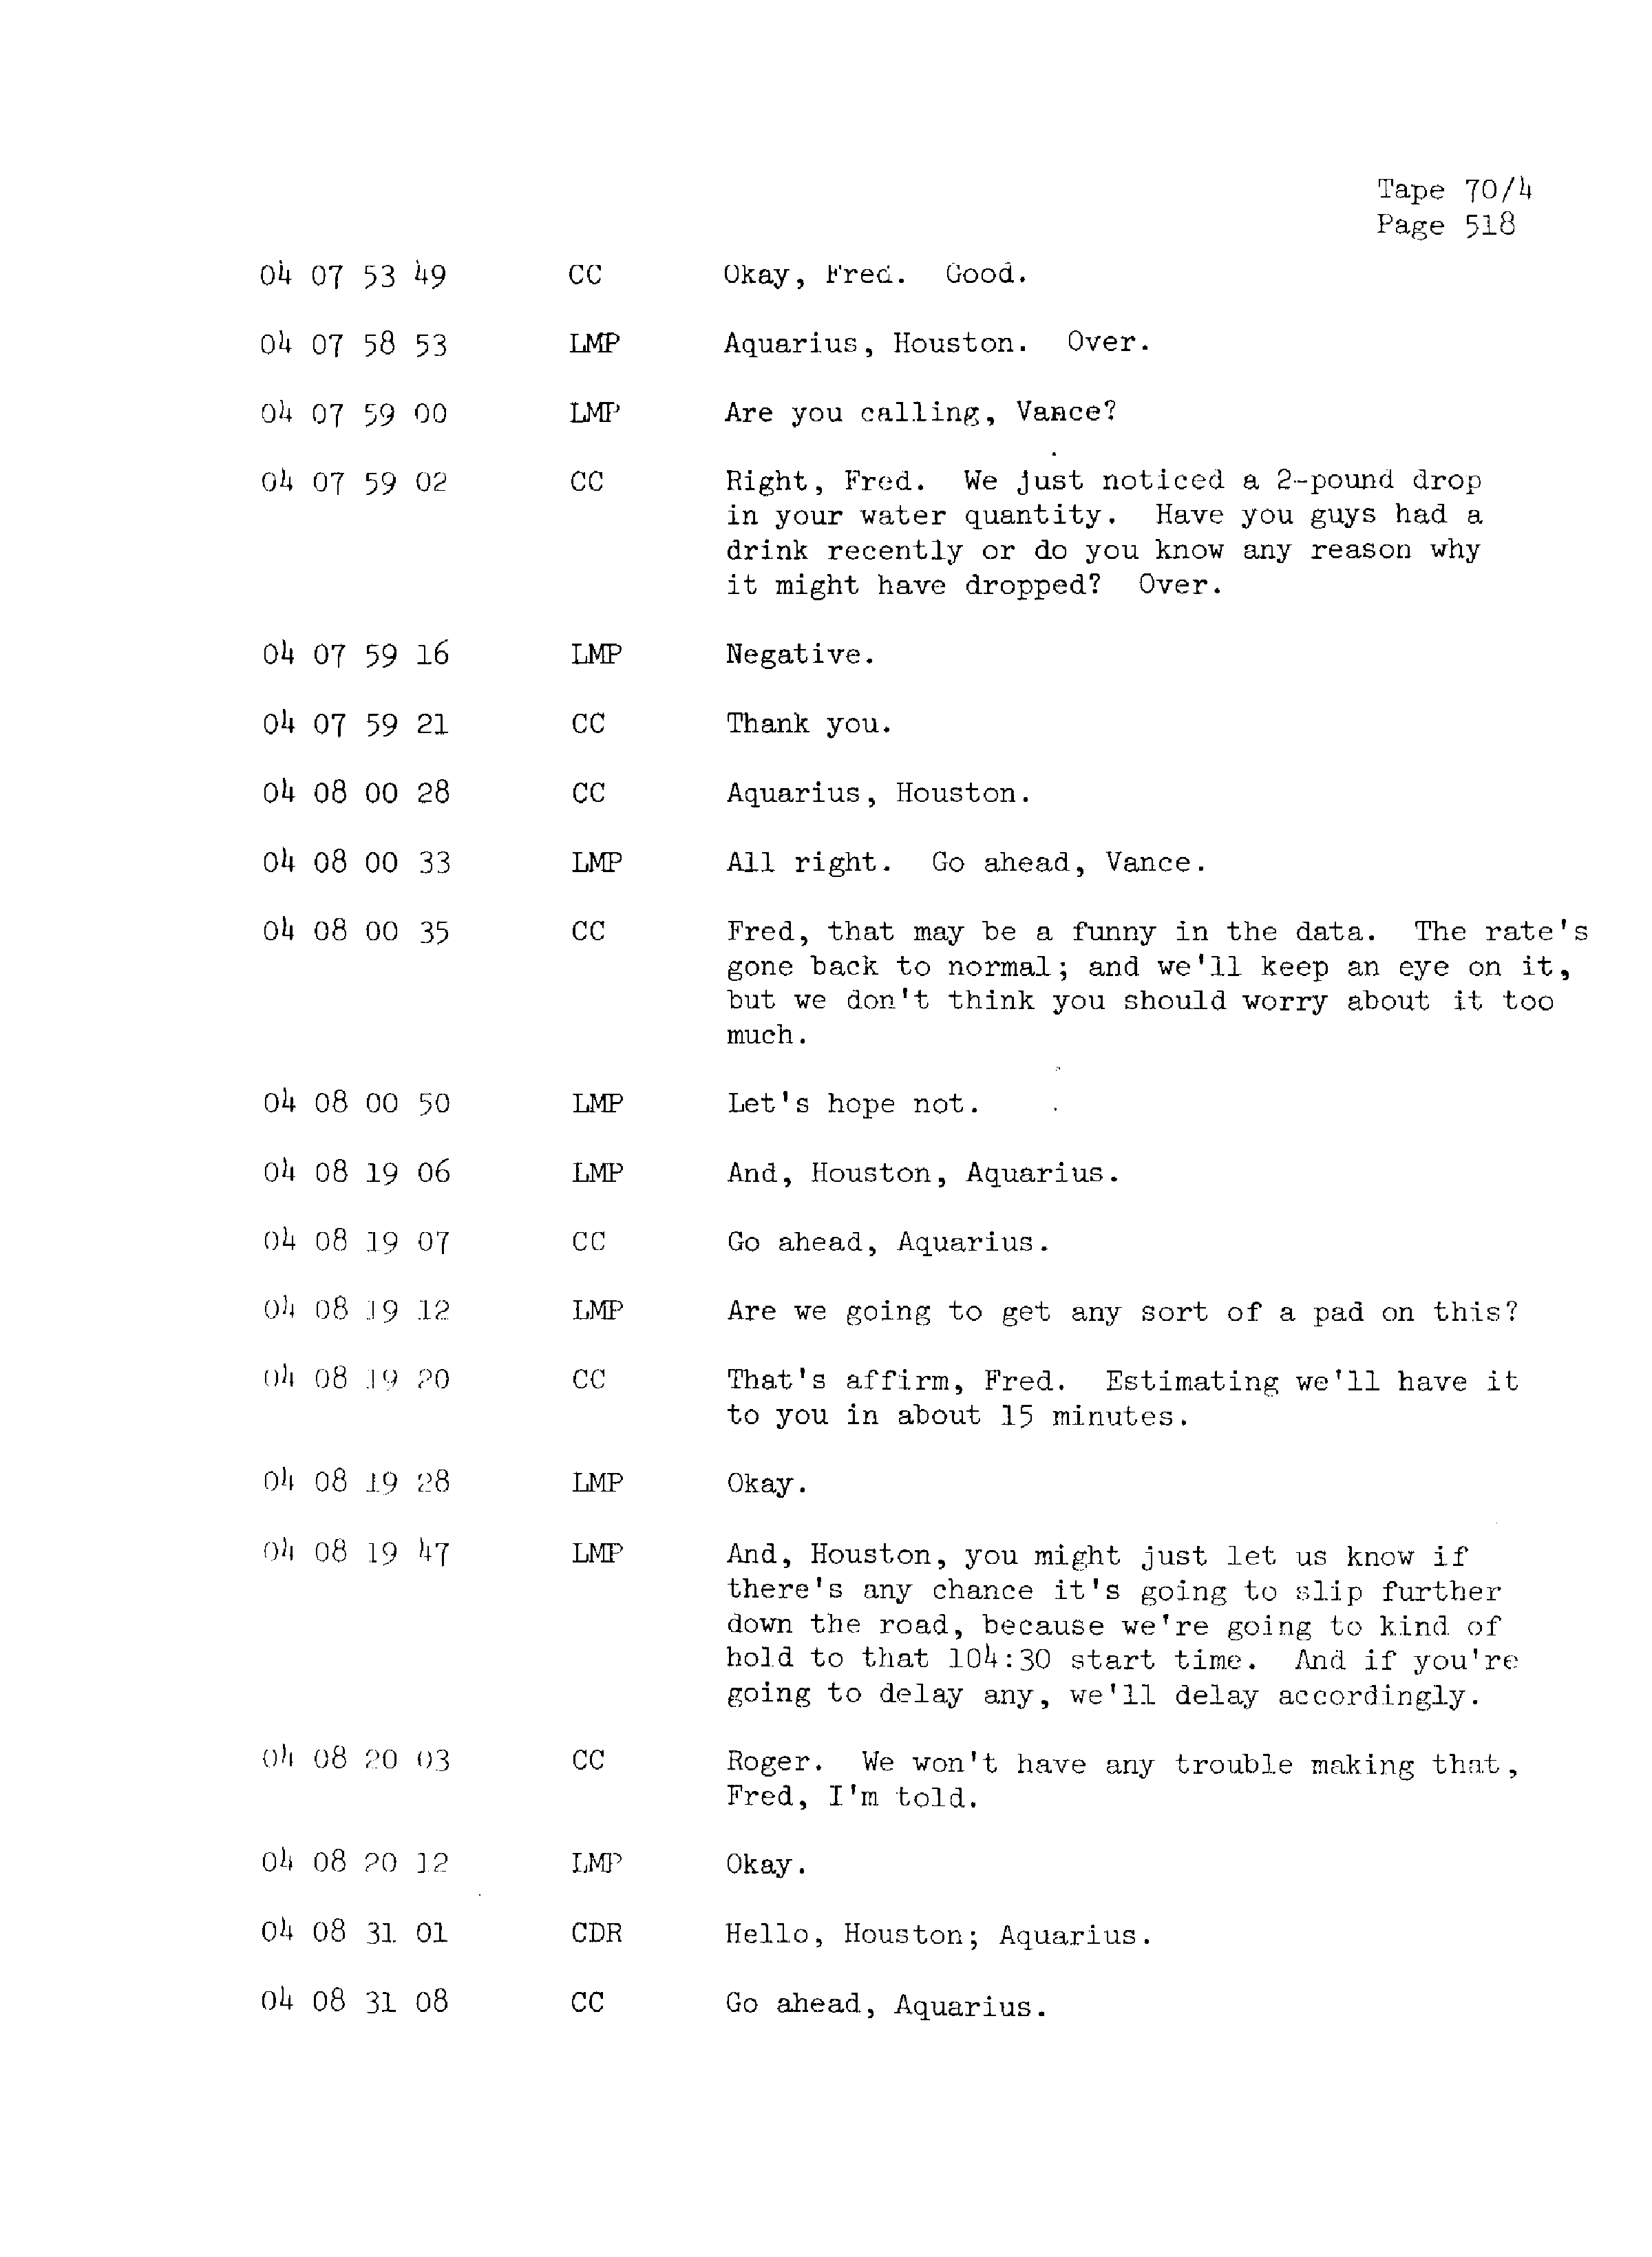 Page 525 of Apollo 13’s original transcript